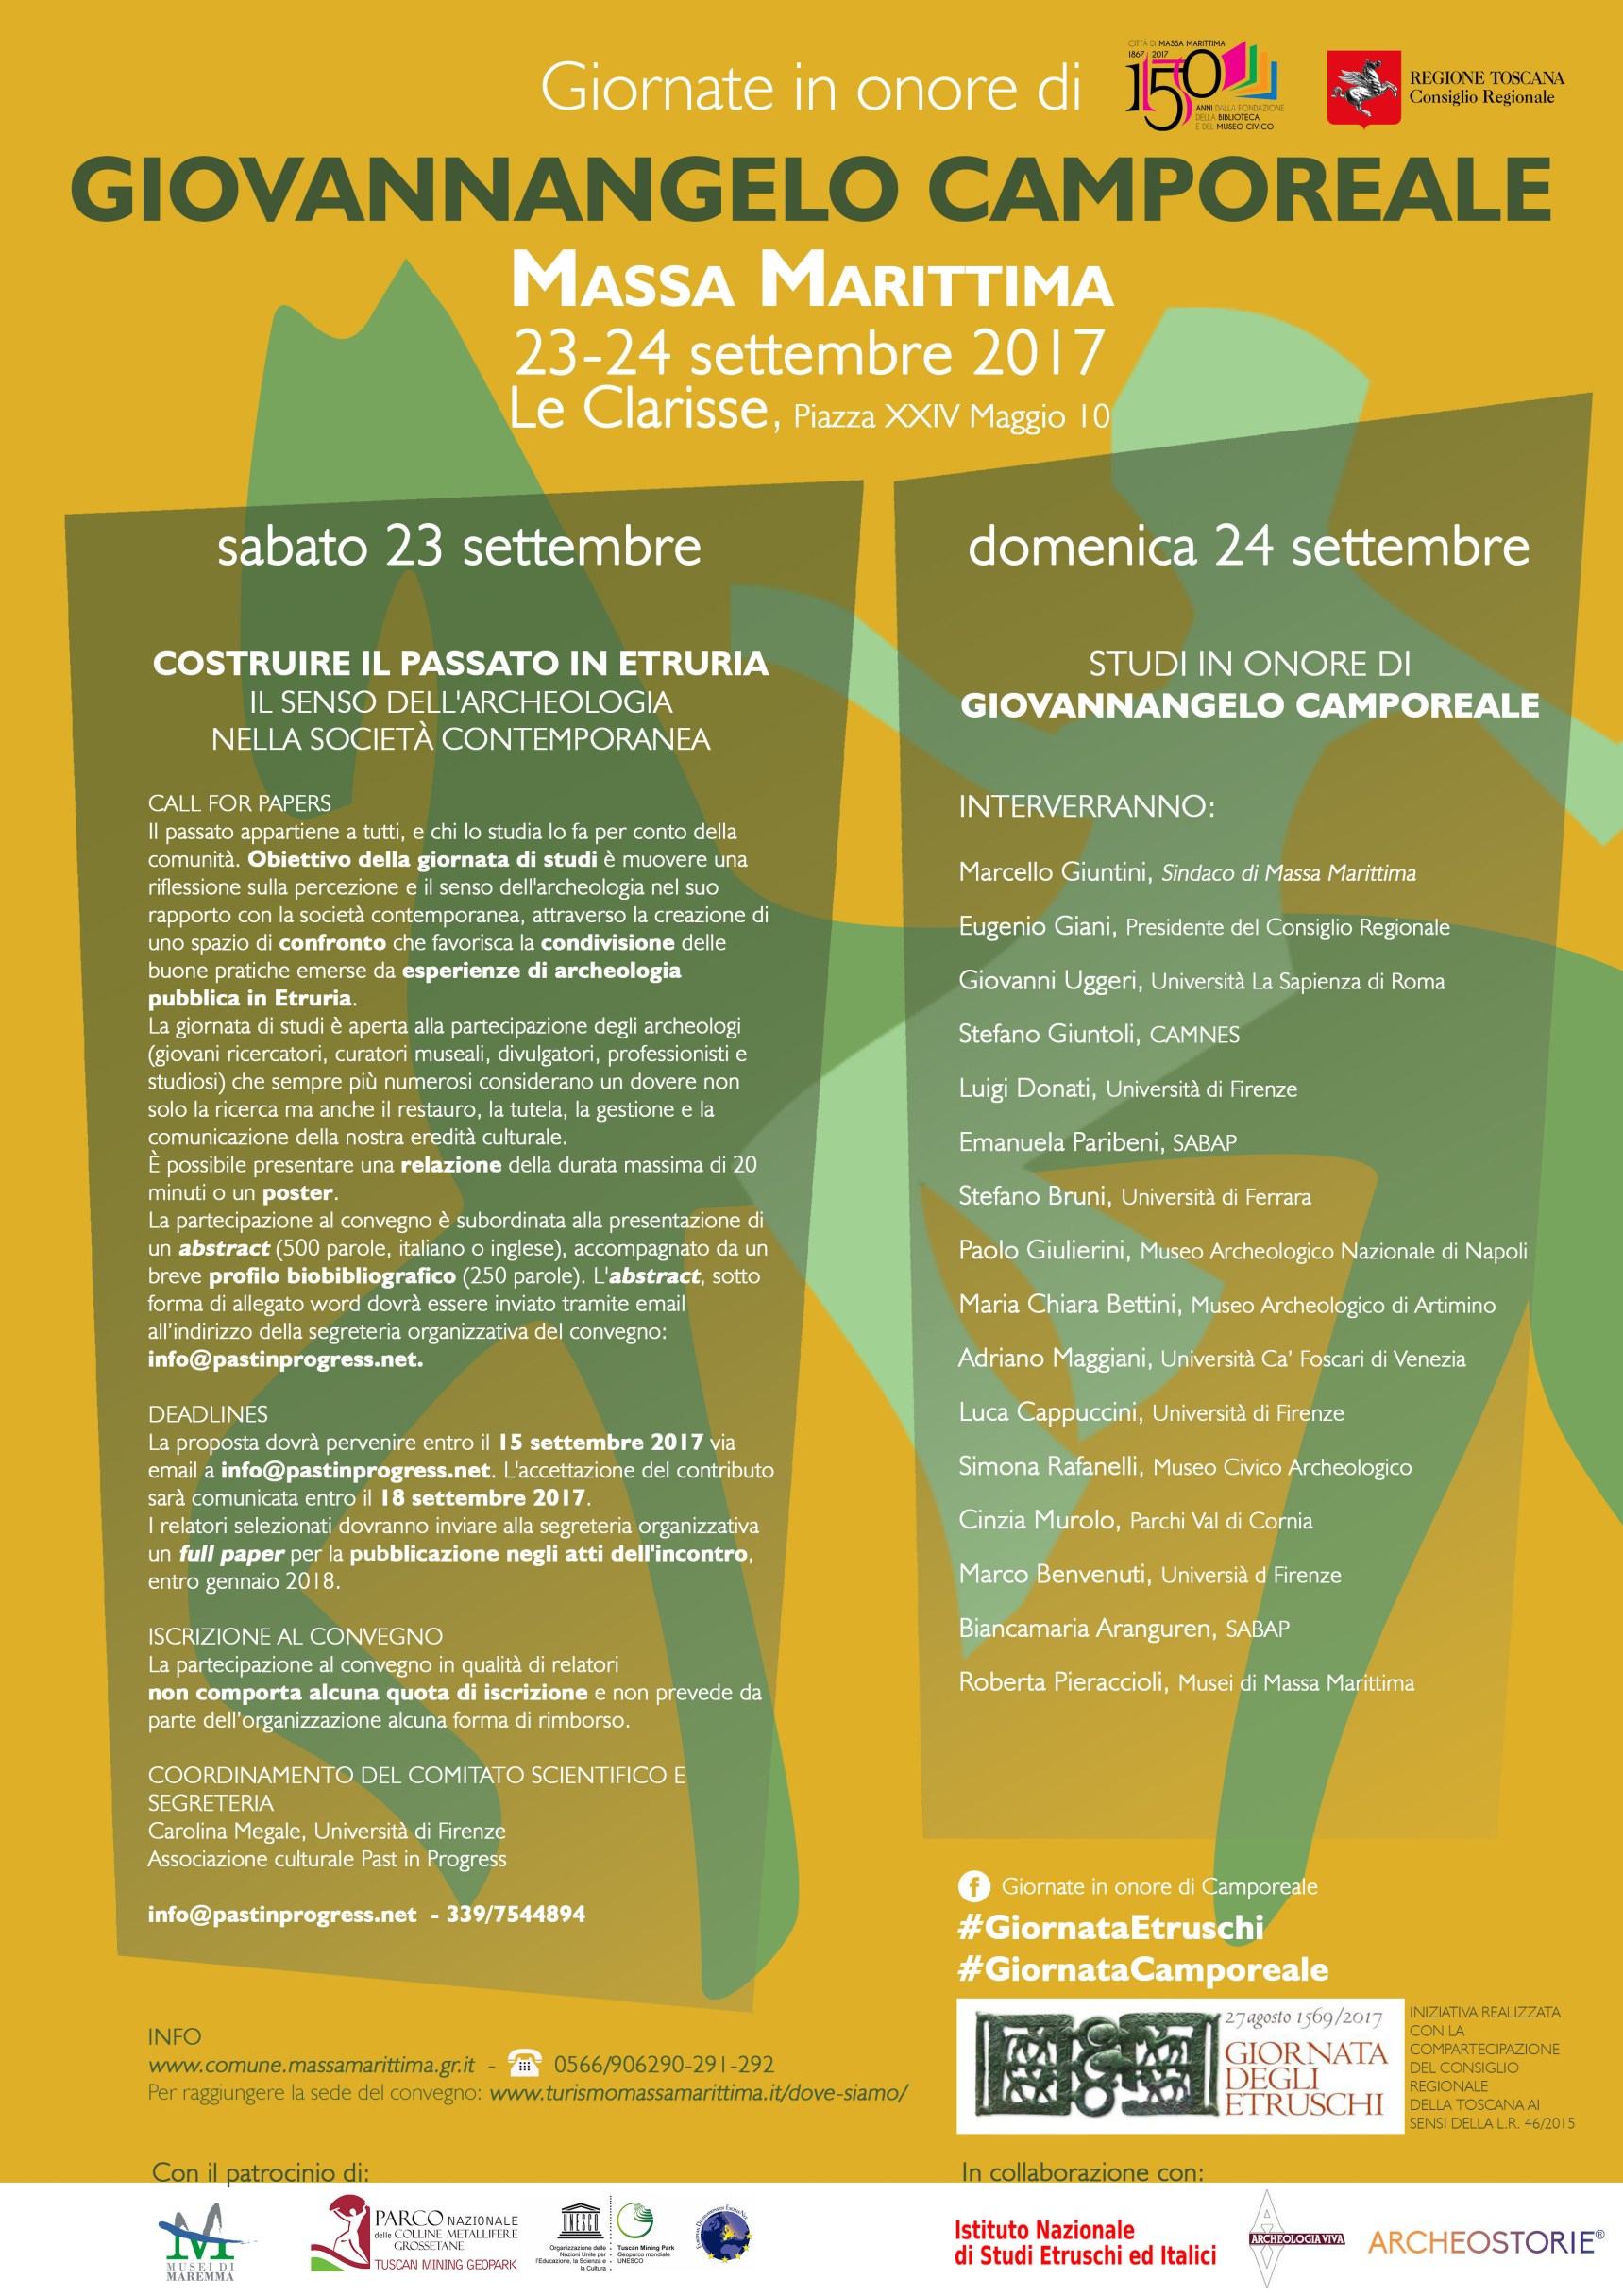 Giornate in Onore di Giovannangelo Camporeale 23-24 Settembre 2017